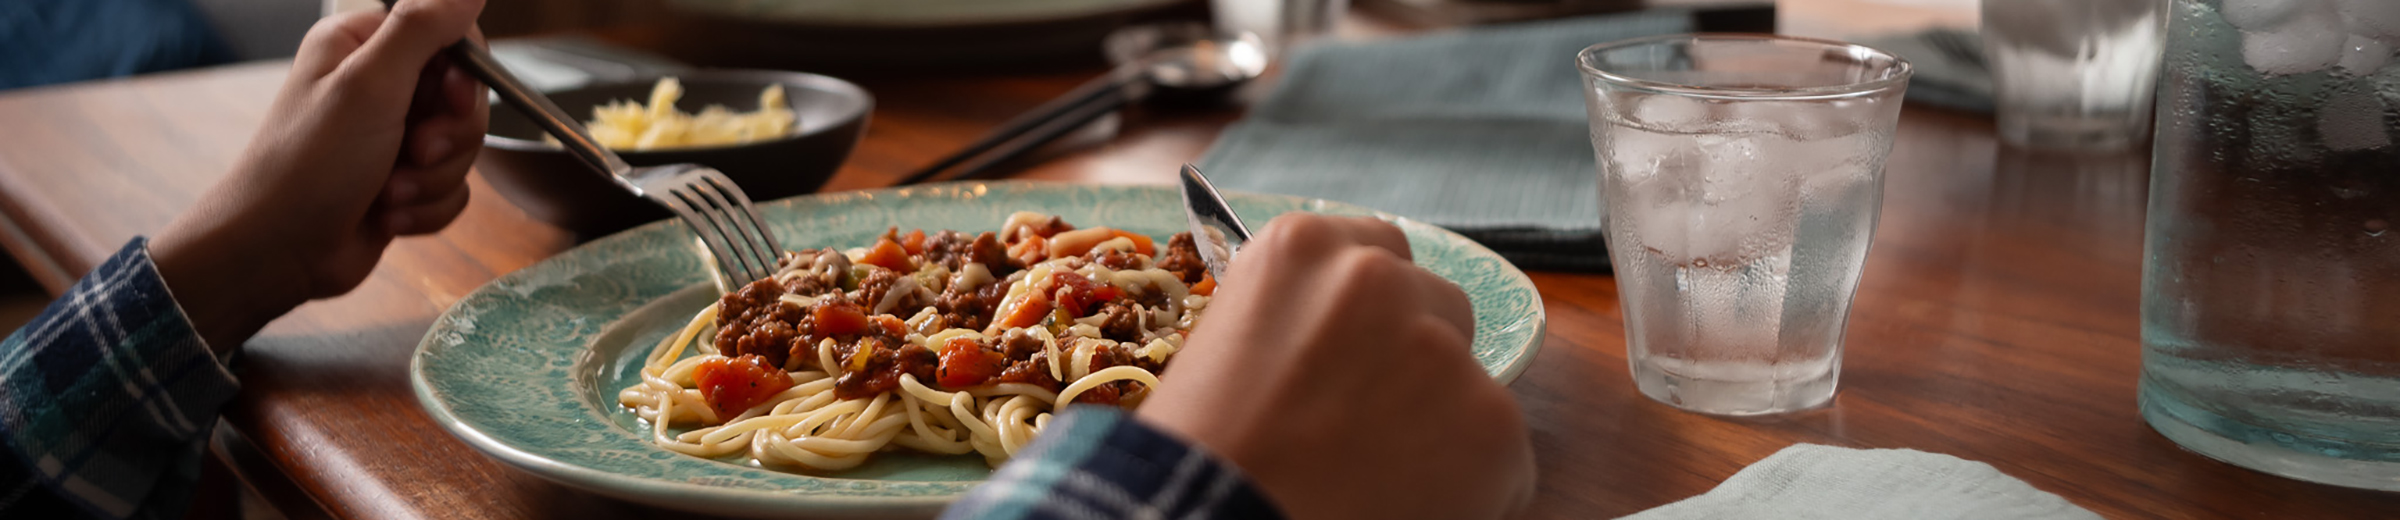 Mains tenant une fourchette et un couteau au-dessus d'une assiette de spaghettis à une table de dîner.